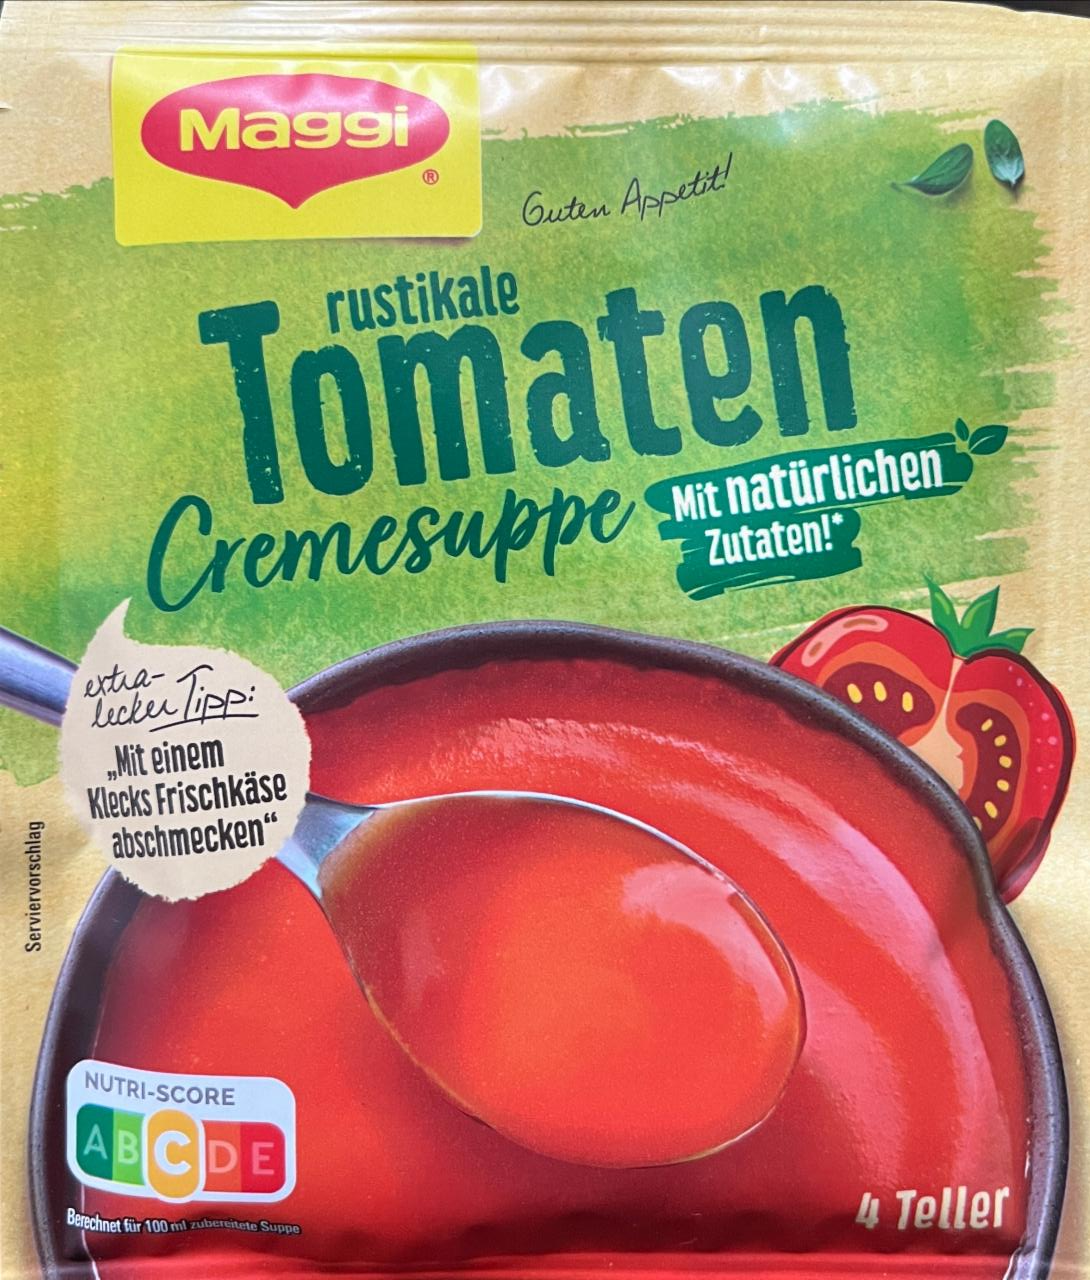 Fotografie - Rustikale Tomaten Cremesuppe Maggi